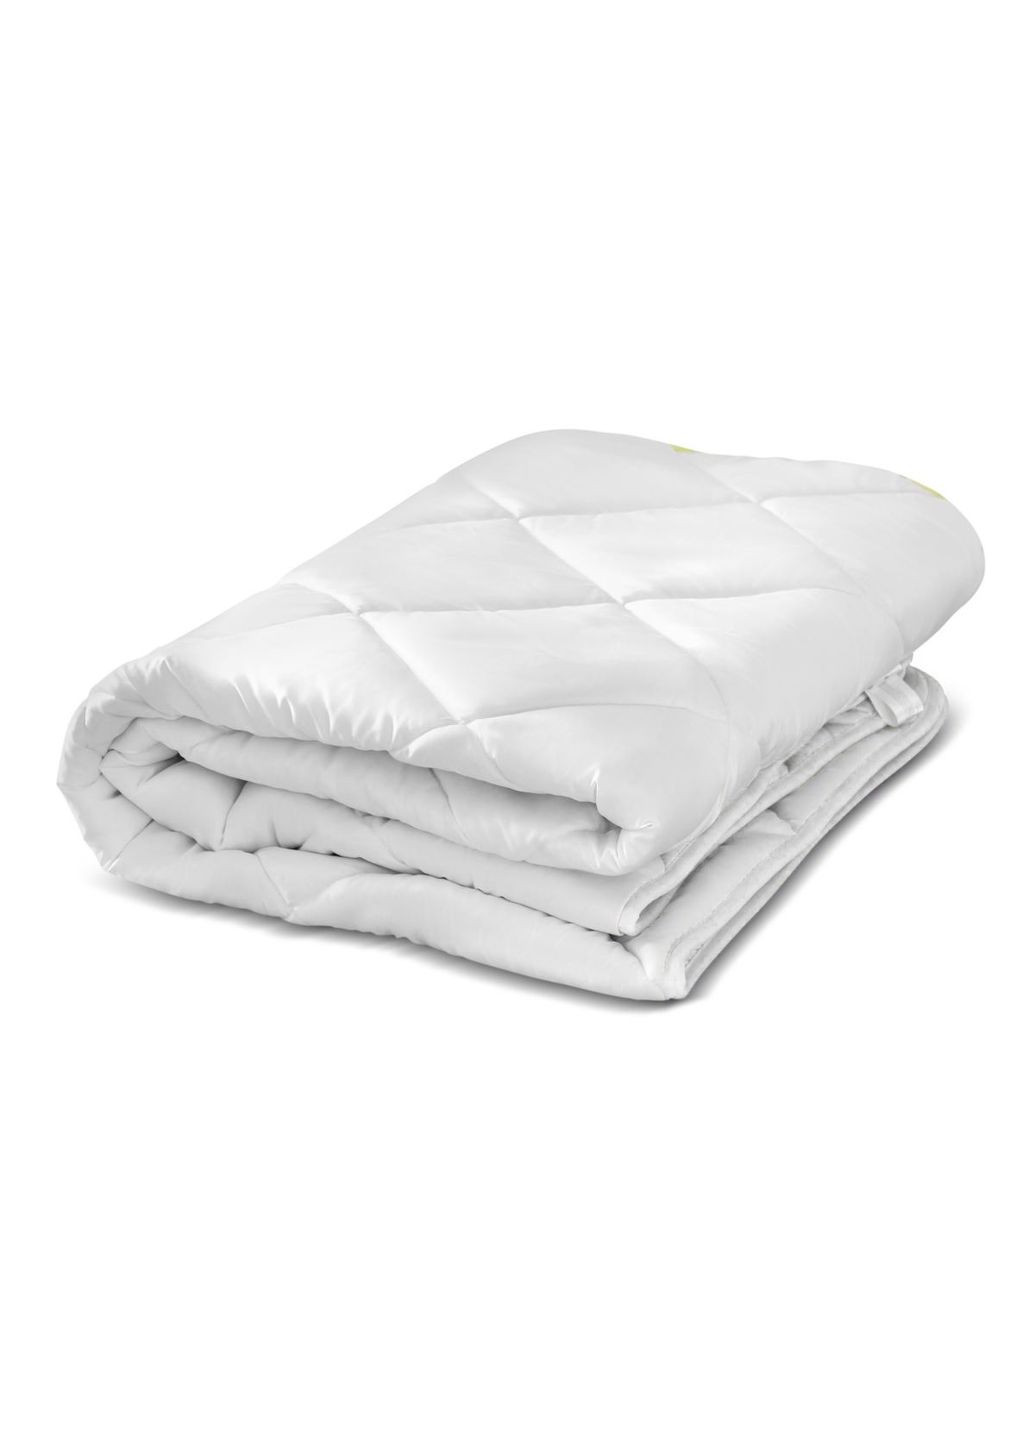 Одеяло шерстяное №1639 Eco Light White Всесезонное 110х140 (2200002653091) Mirson (293655284)